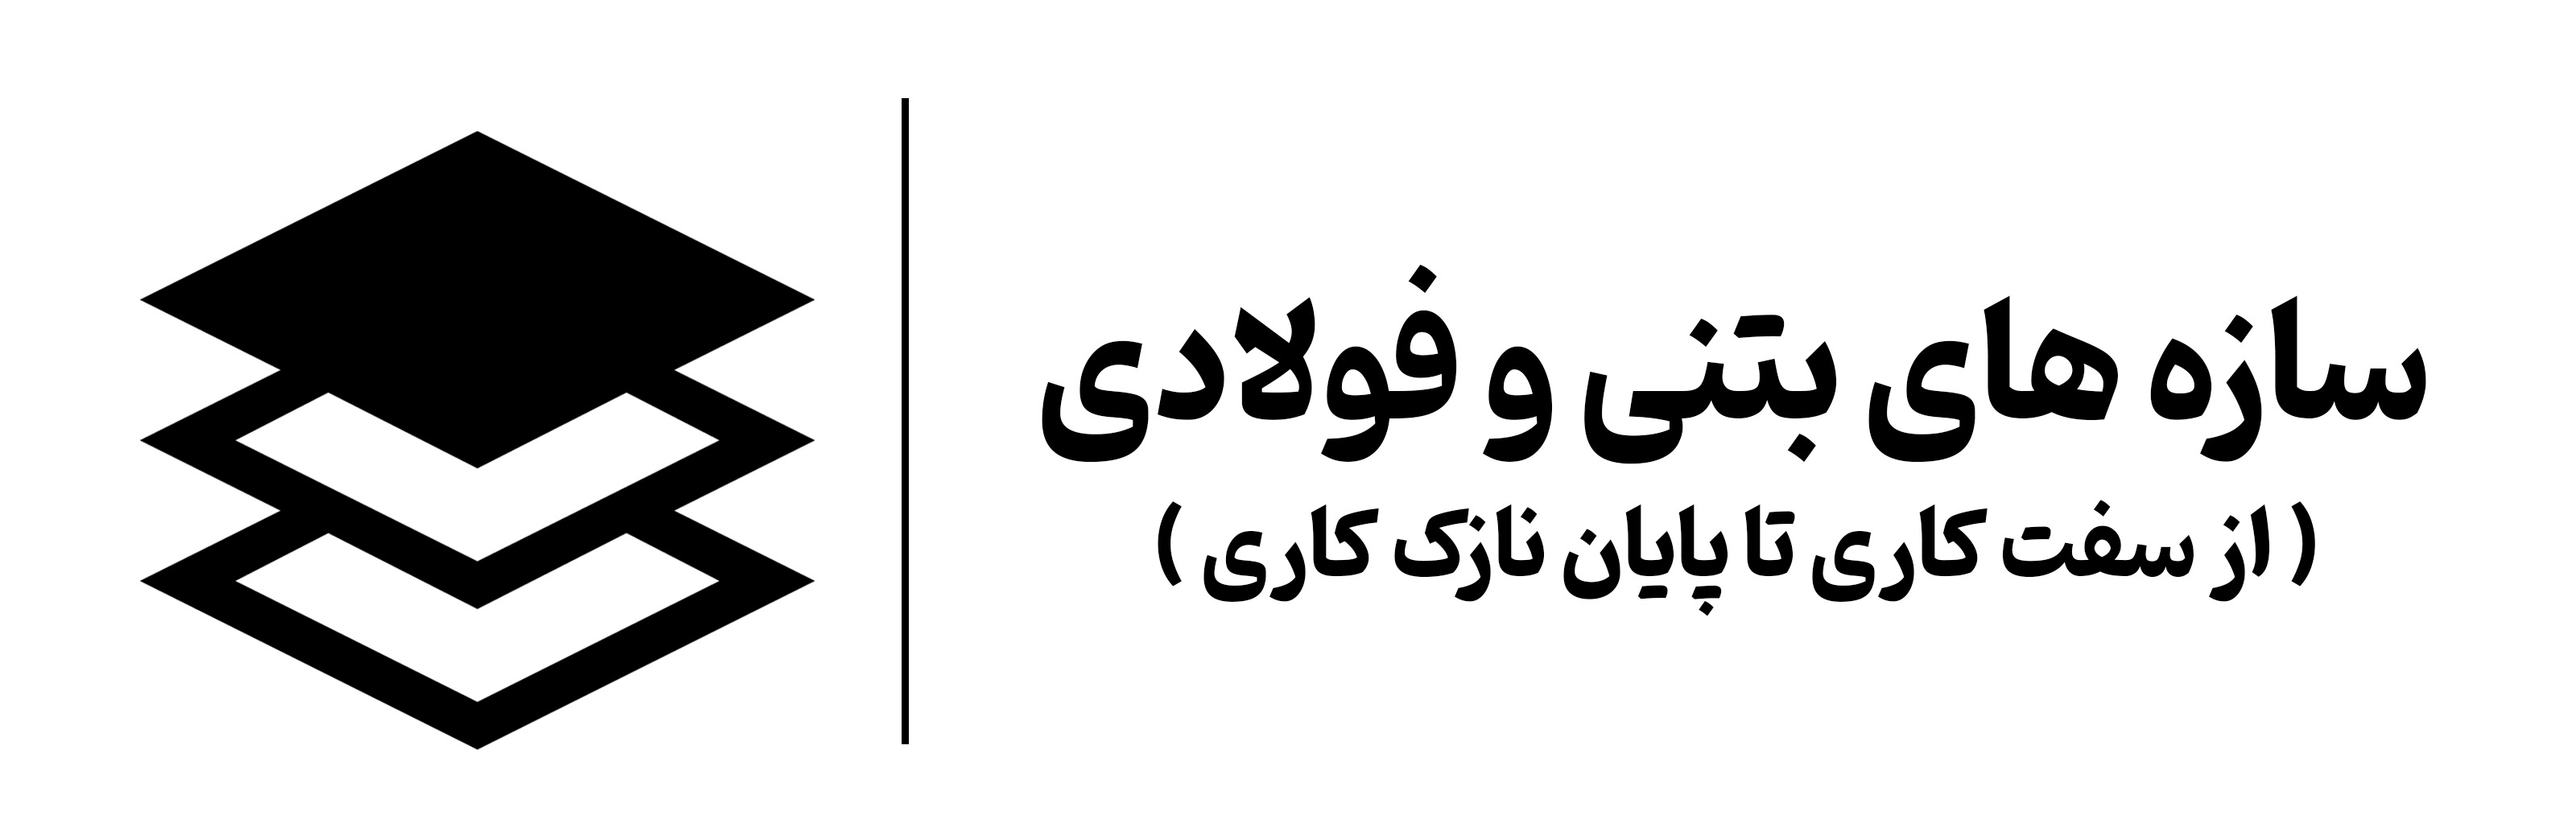 آموزش دوره سازه های بتنی و فولادی اصفهان مهرگان